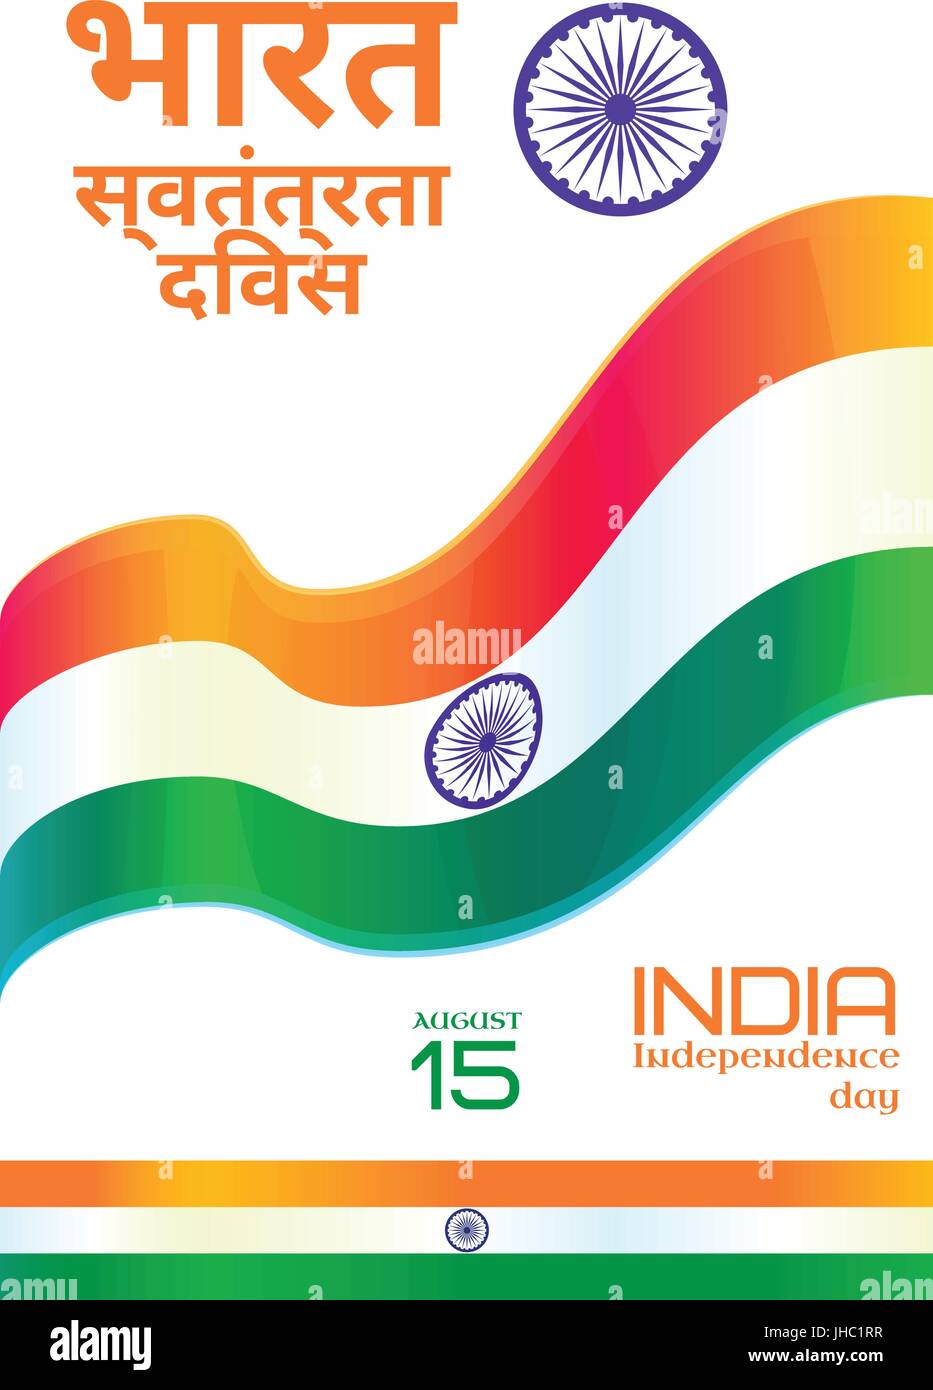 Indien-Unabhängigkeitstag Nationalfeiertag, 15.August. Satz von Vektor-Design-Elemente. Indien Nationalflagge, Text und Ashoka-Rad. Text in Hindi bedeutet Ind Stock Vektor